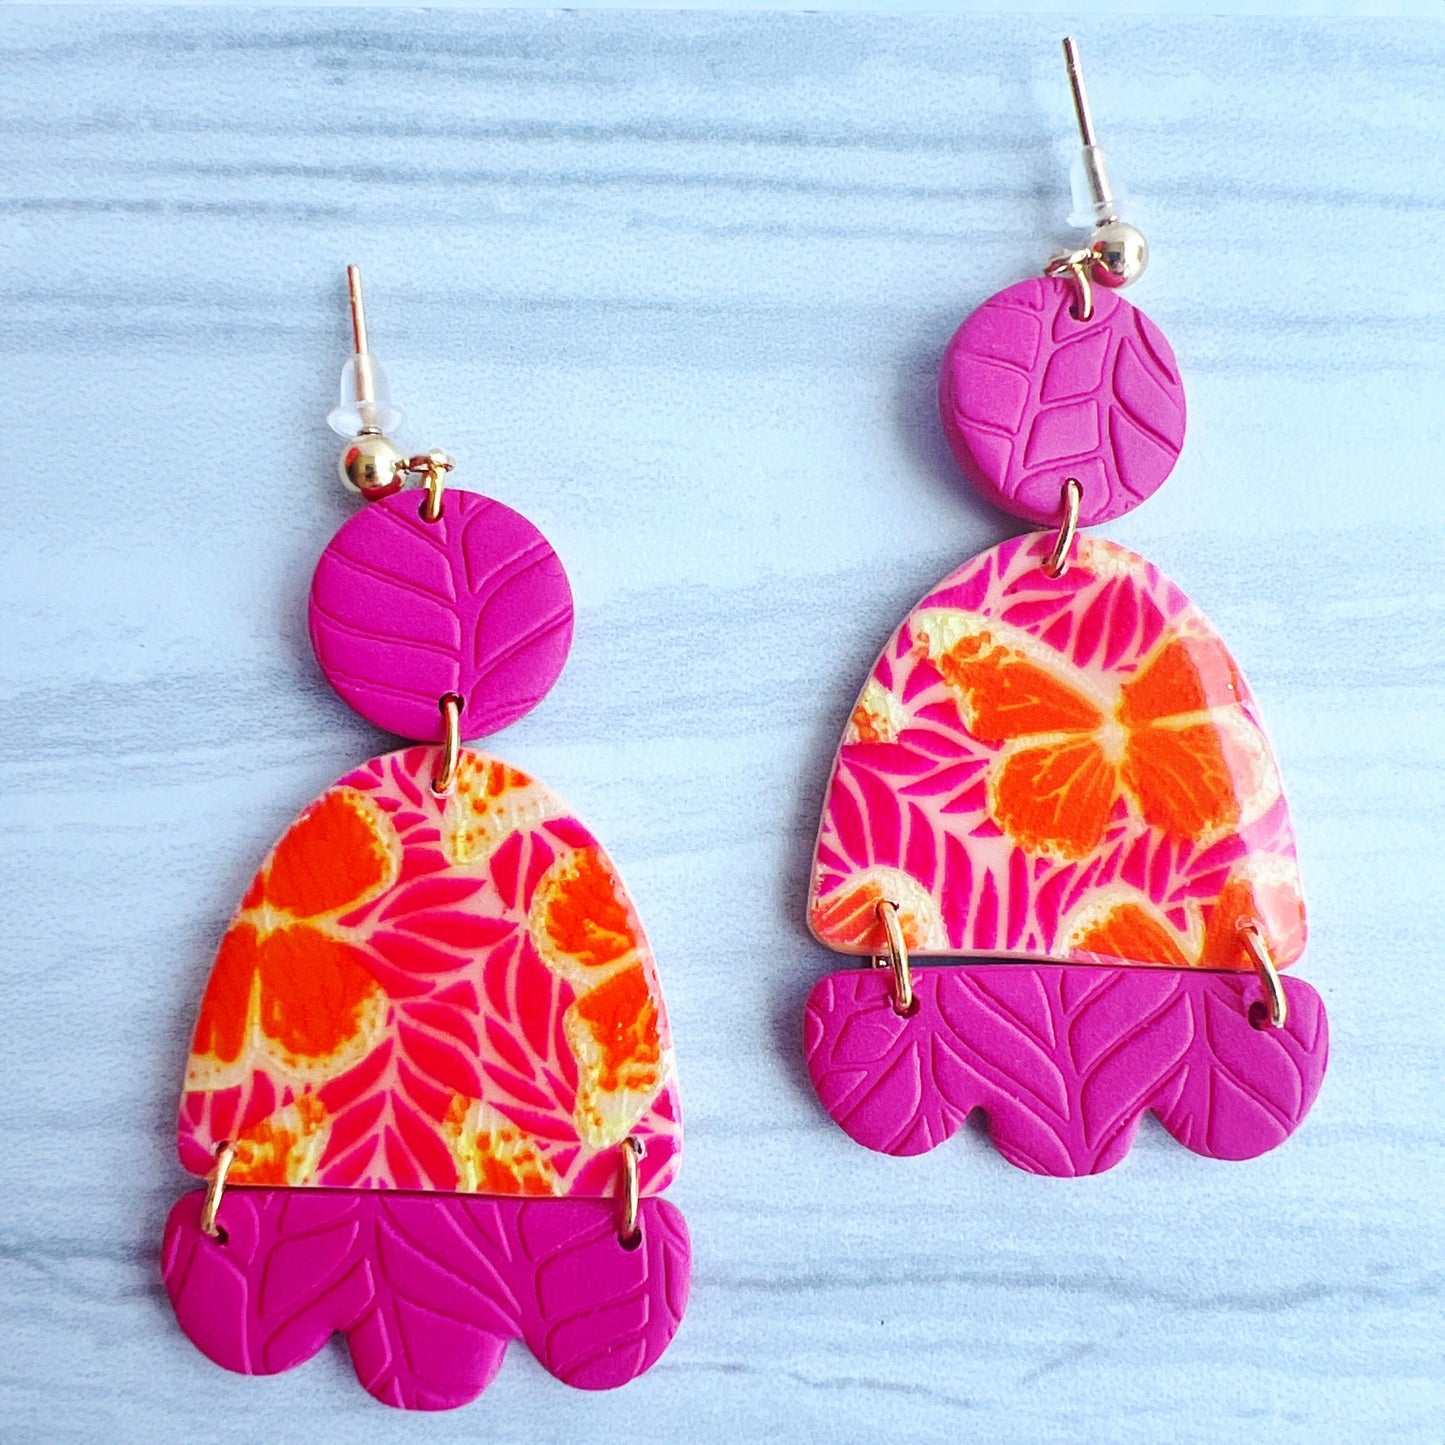 Earrings Idalia - Pink, Orange, Yellow Butterfly Silkscreened Clay Earrings